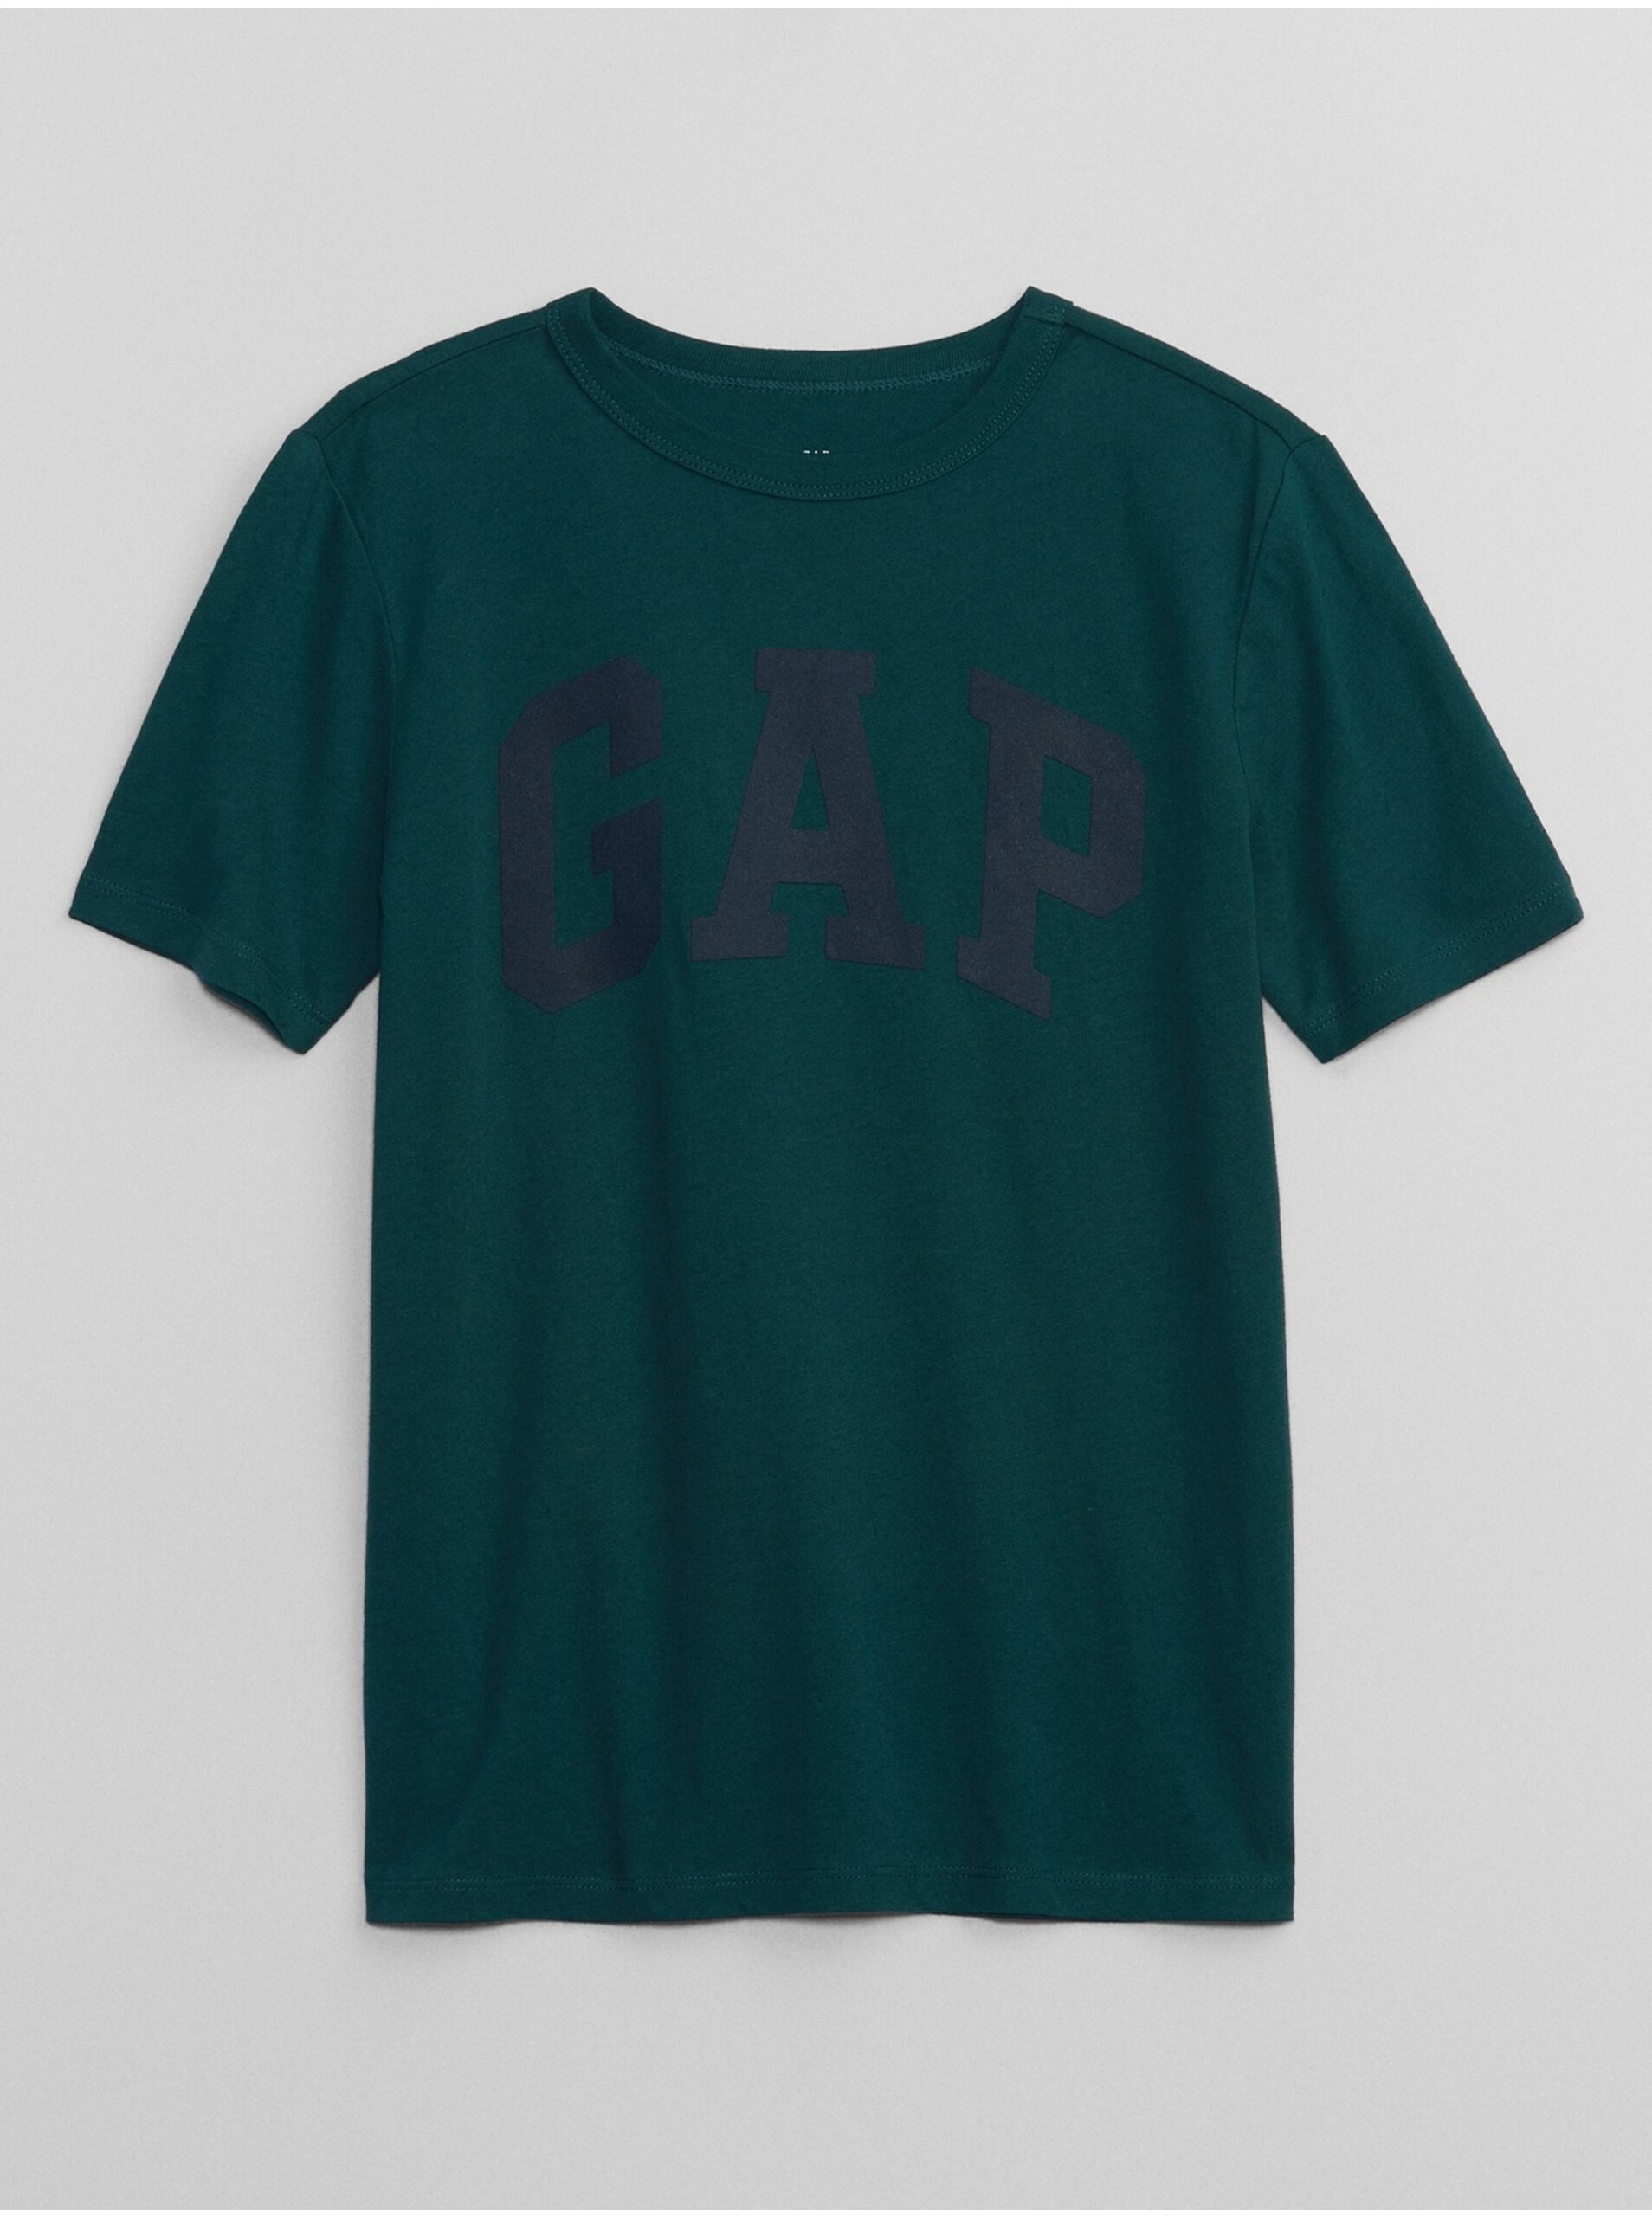 Lacno Tmavozelené chlapčenské tričko s logom GAP